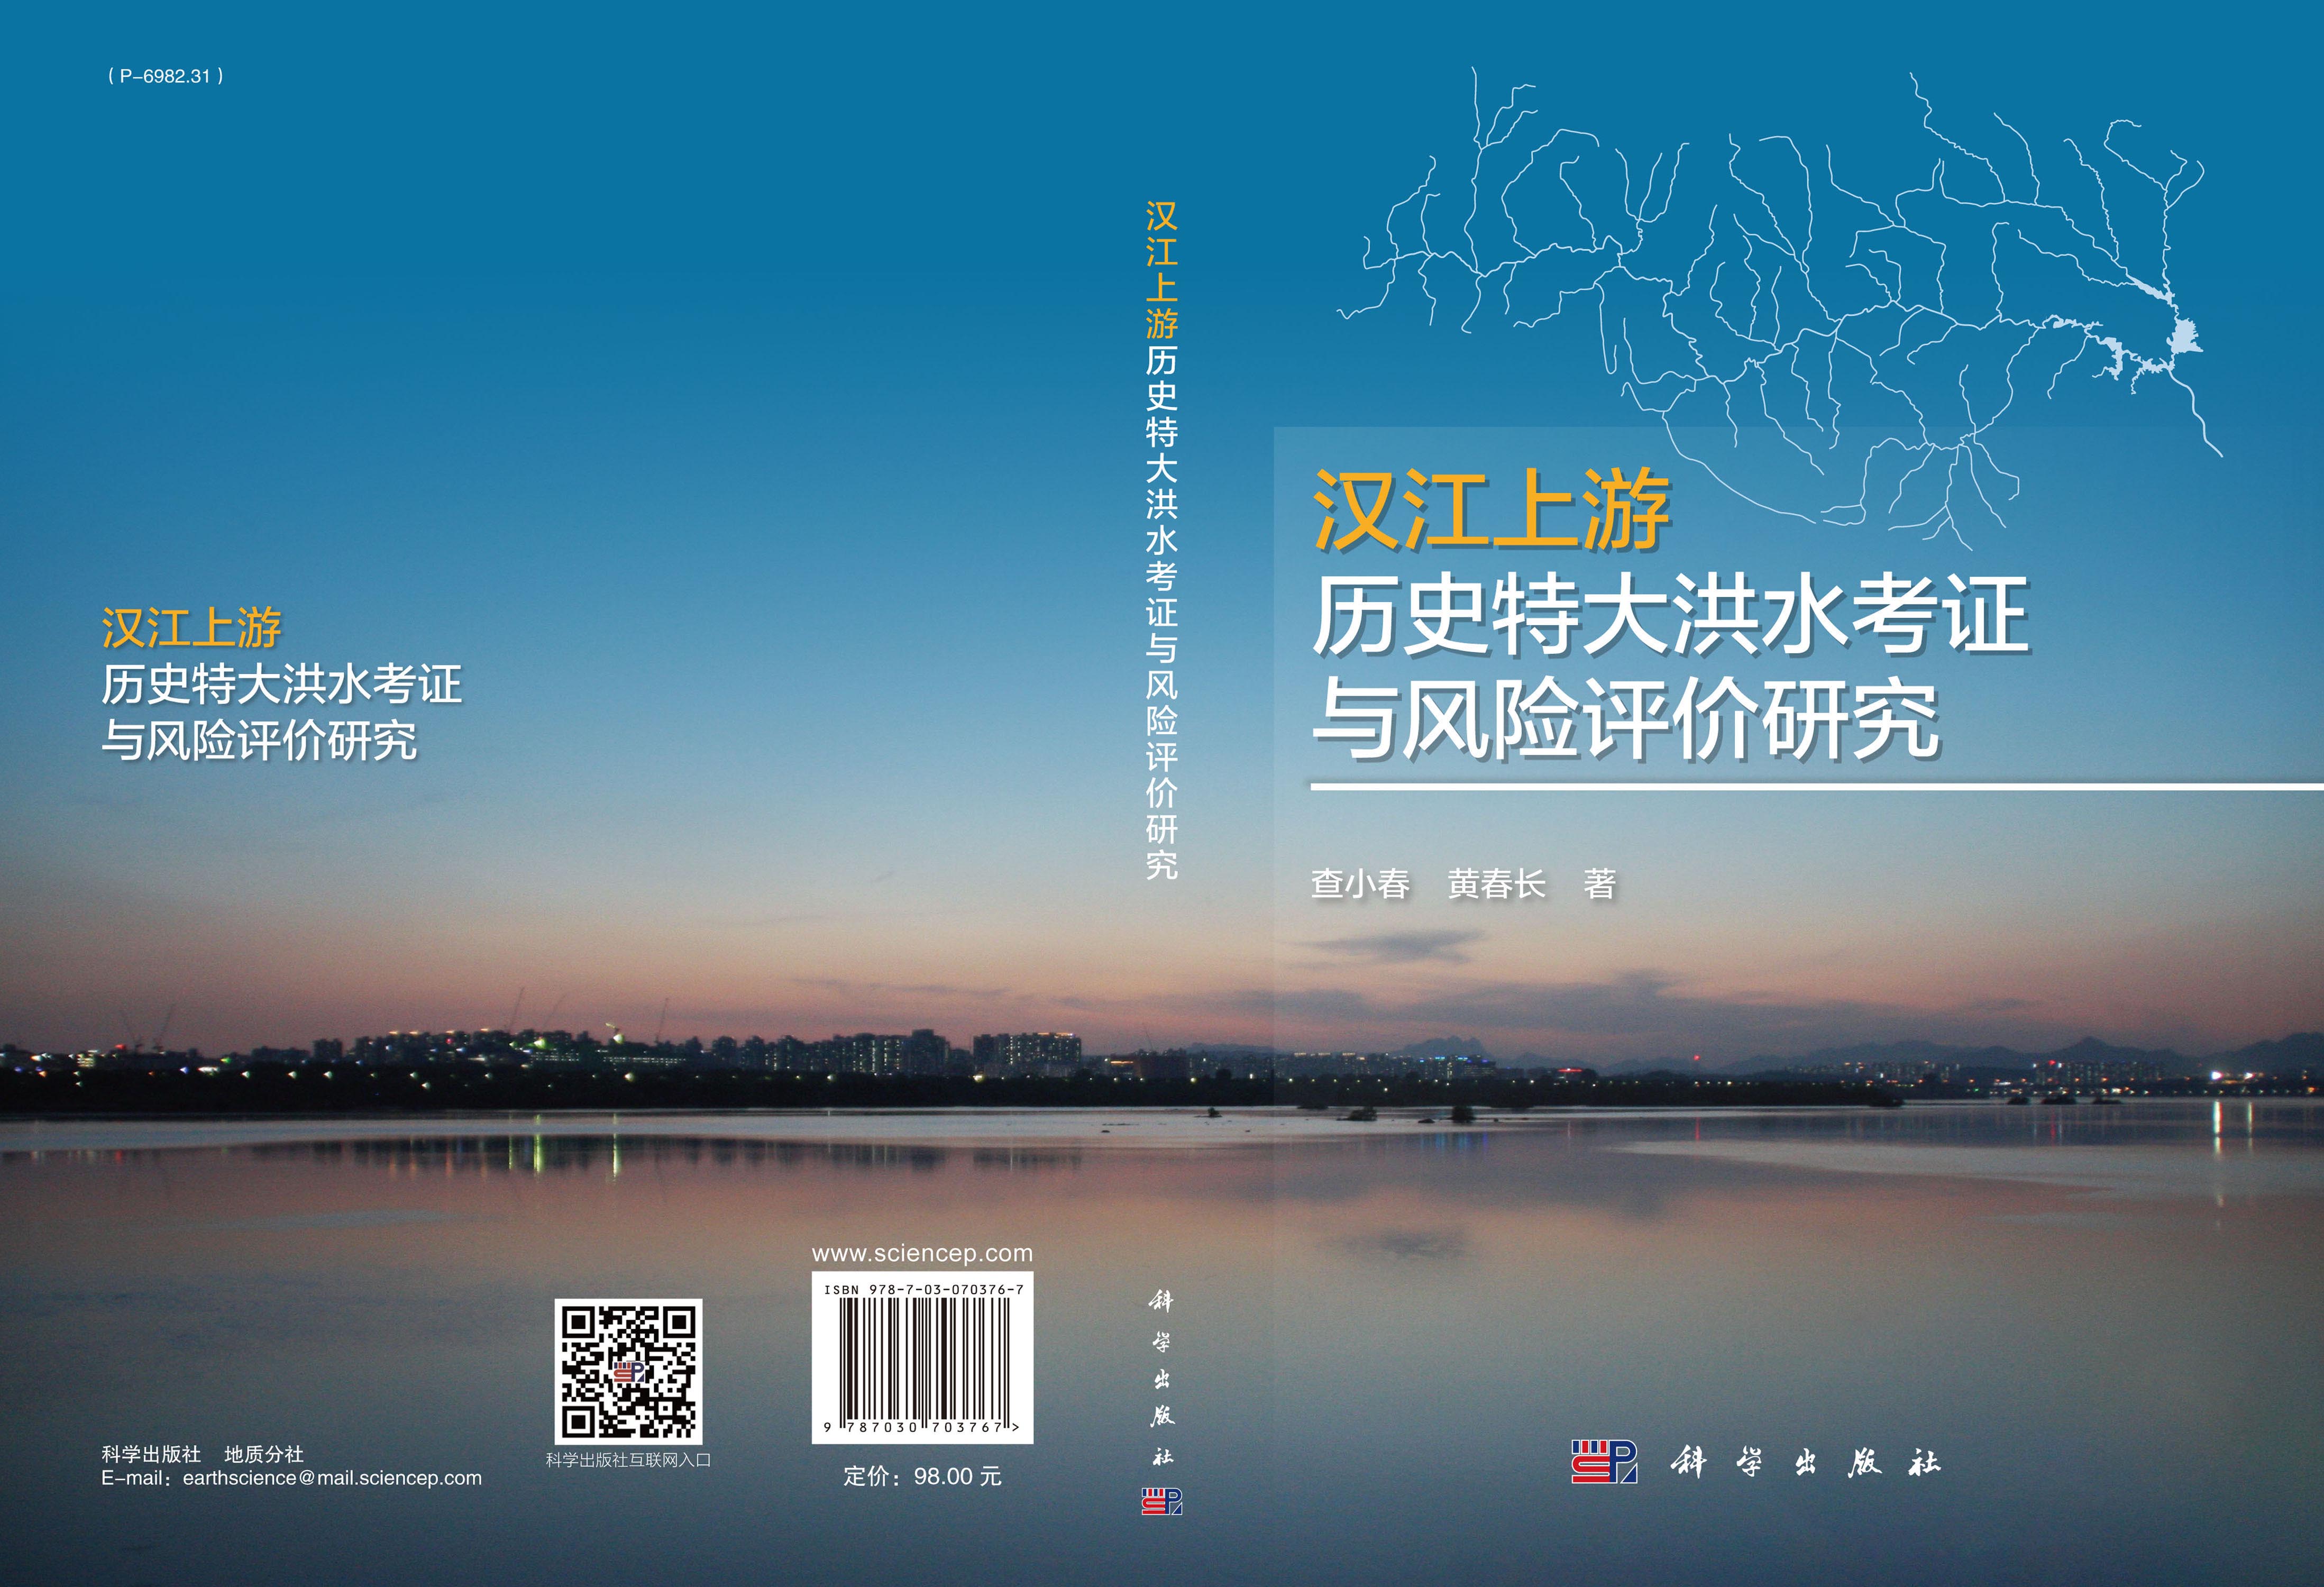 汉江上游历史特大洪水考证与风险评价研究